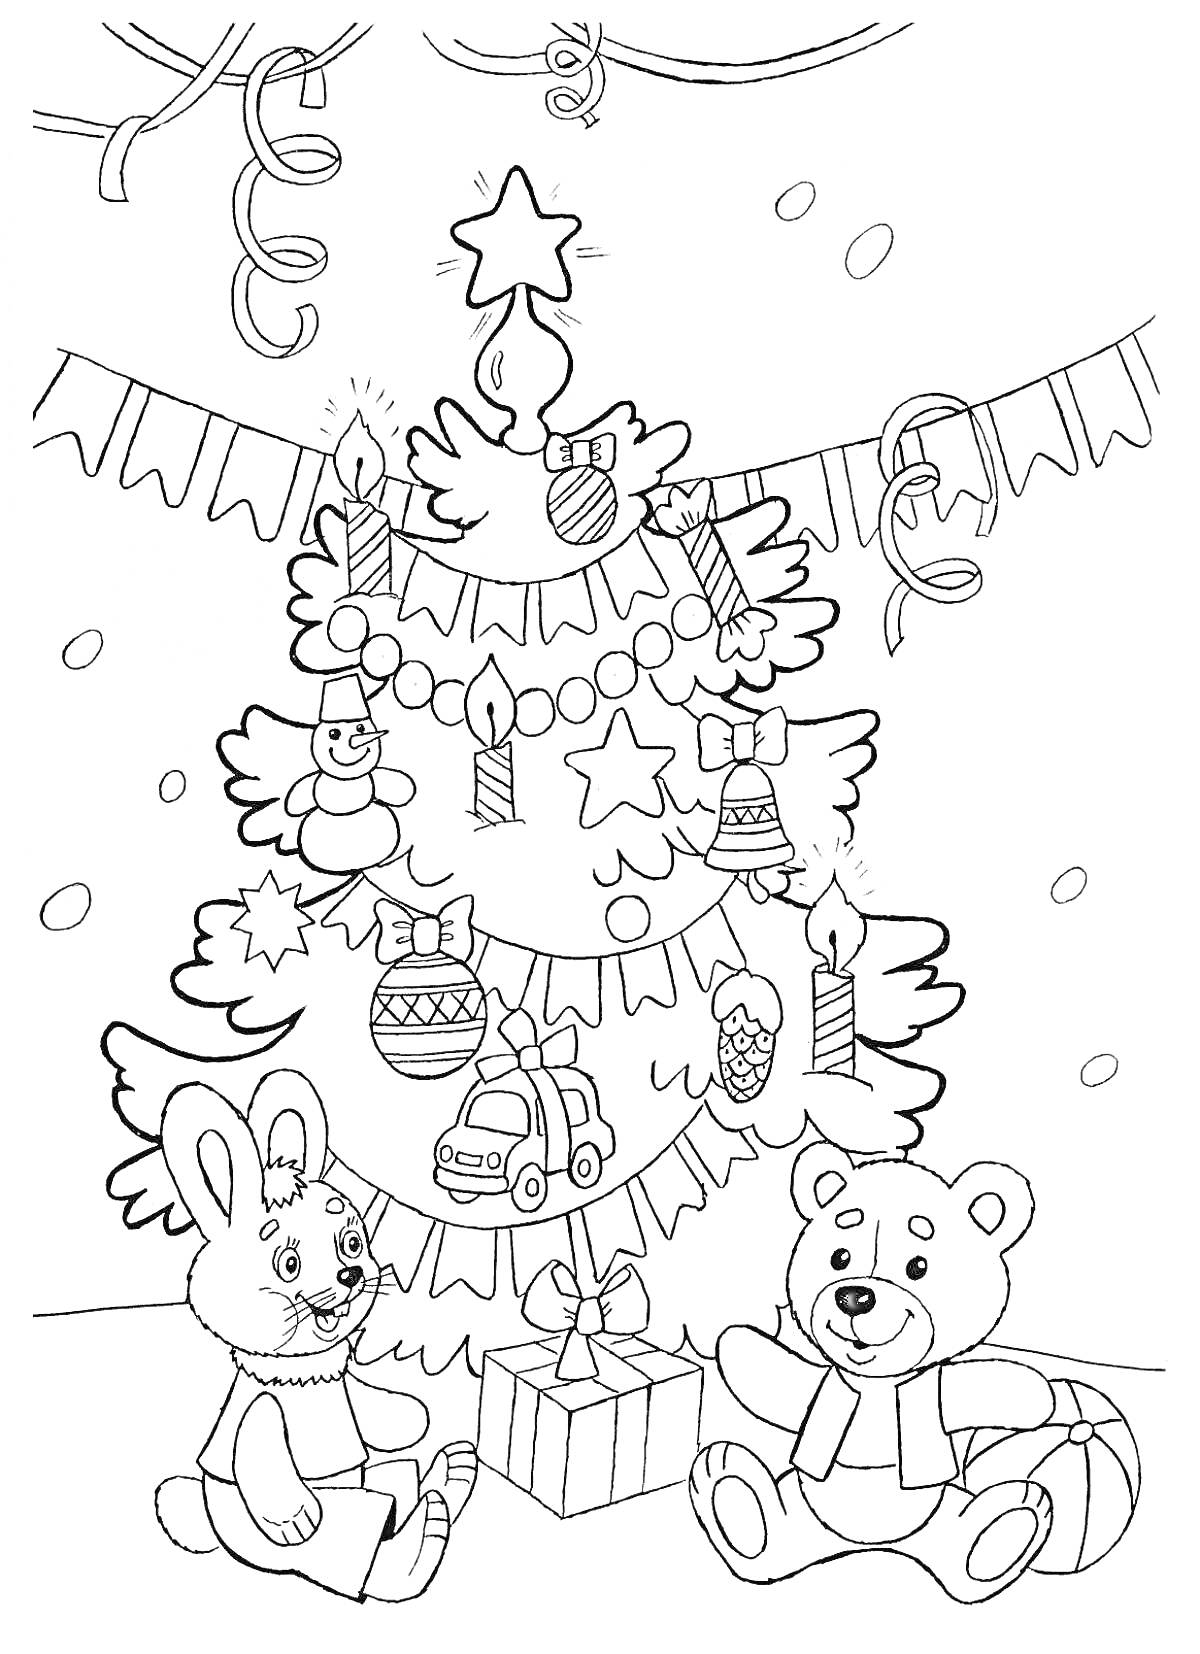 Новогодняя елка с игрушками, свечами и подарками, на фоне флажков и серпантина. Рядом с елкой сидят кролик и медвежонок.